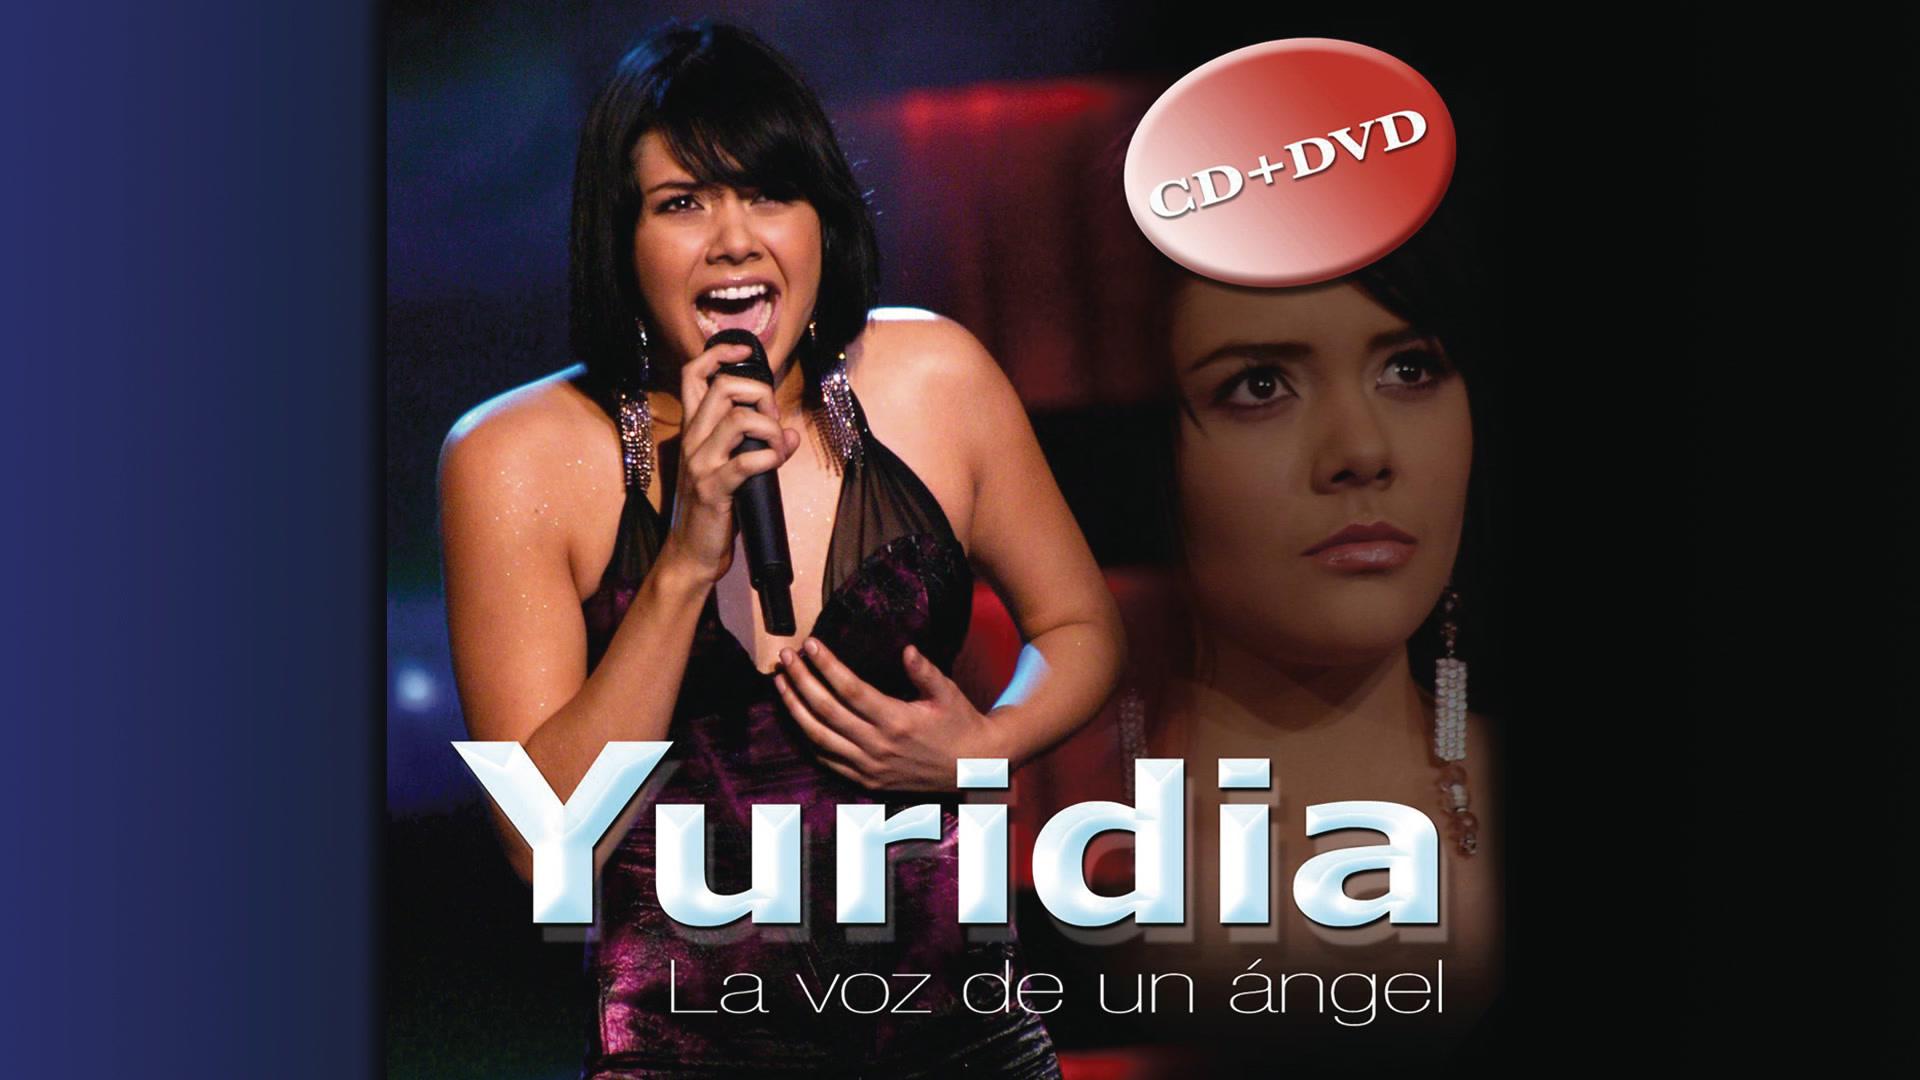 Yuridia - Tú (Cover Audio)